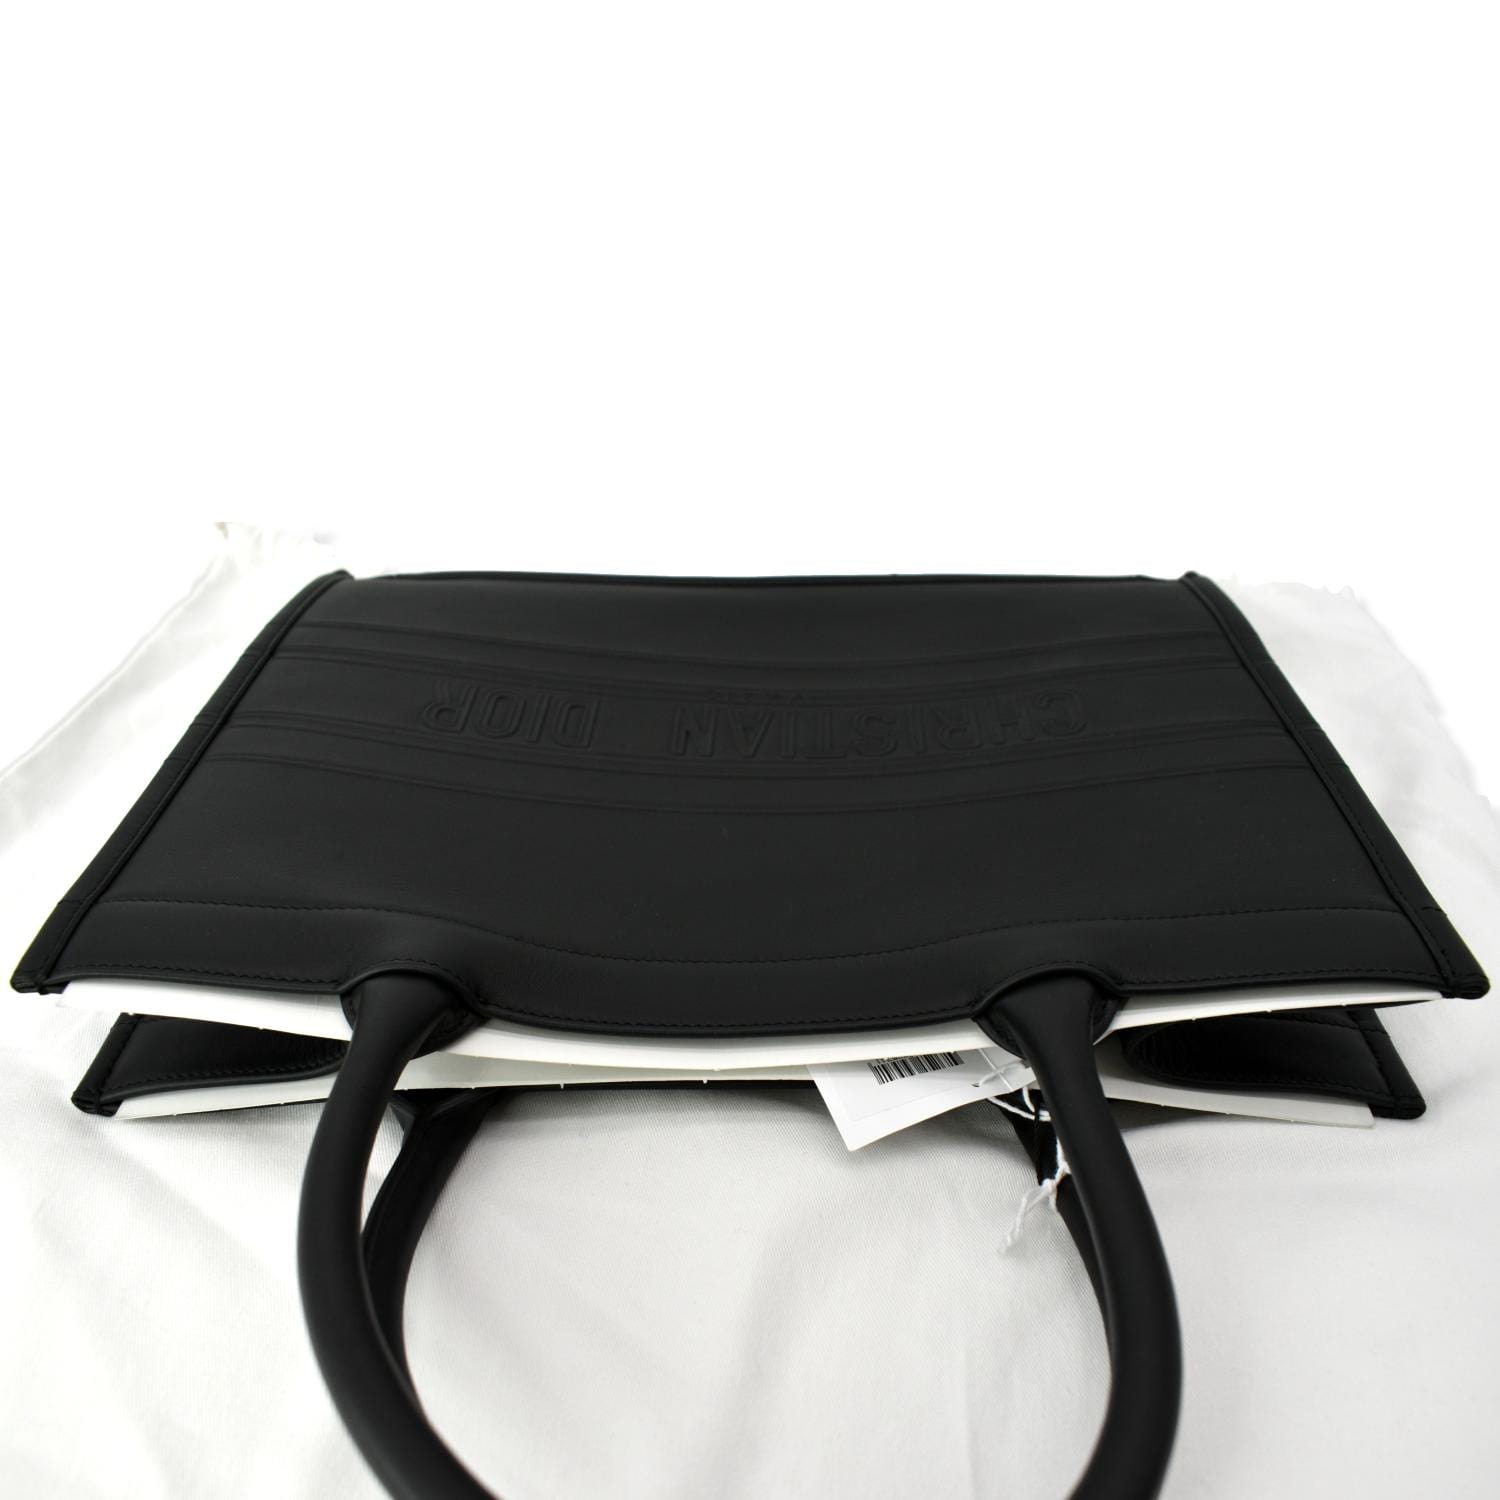 Dior Book Tote Black Calfskin